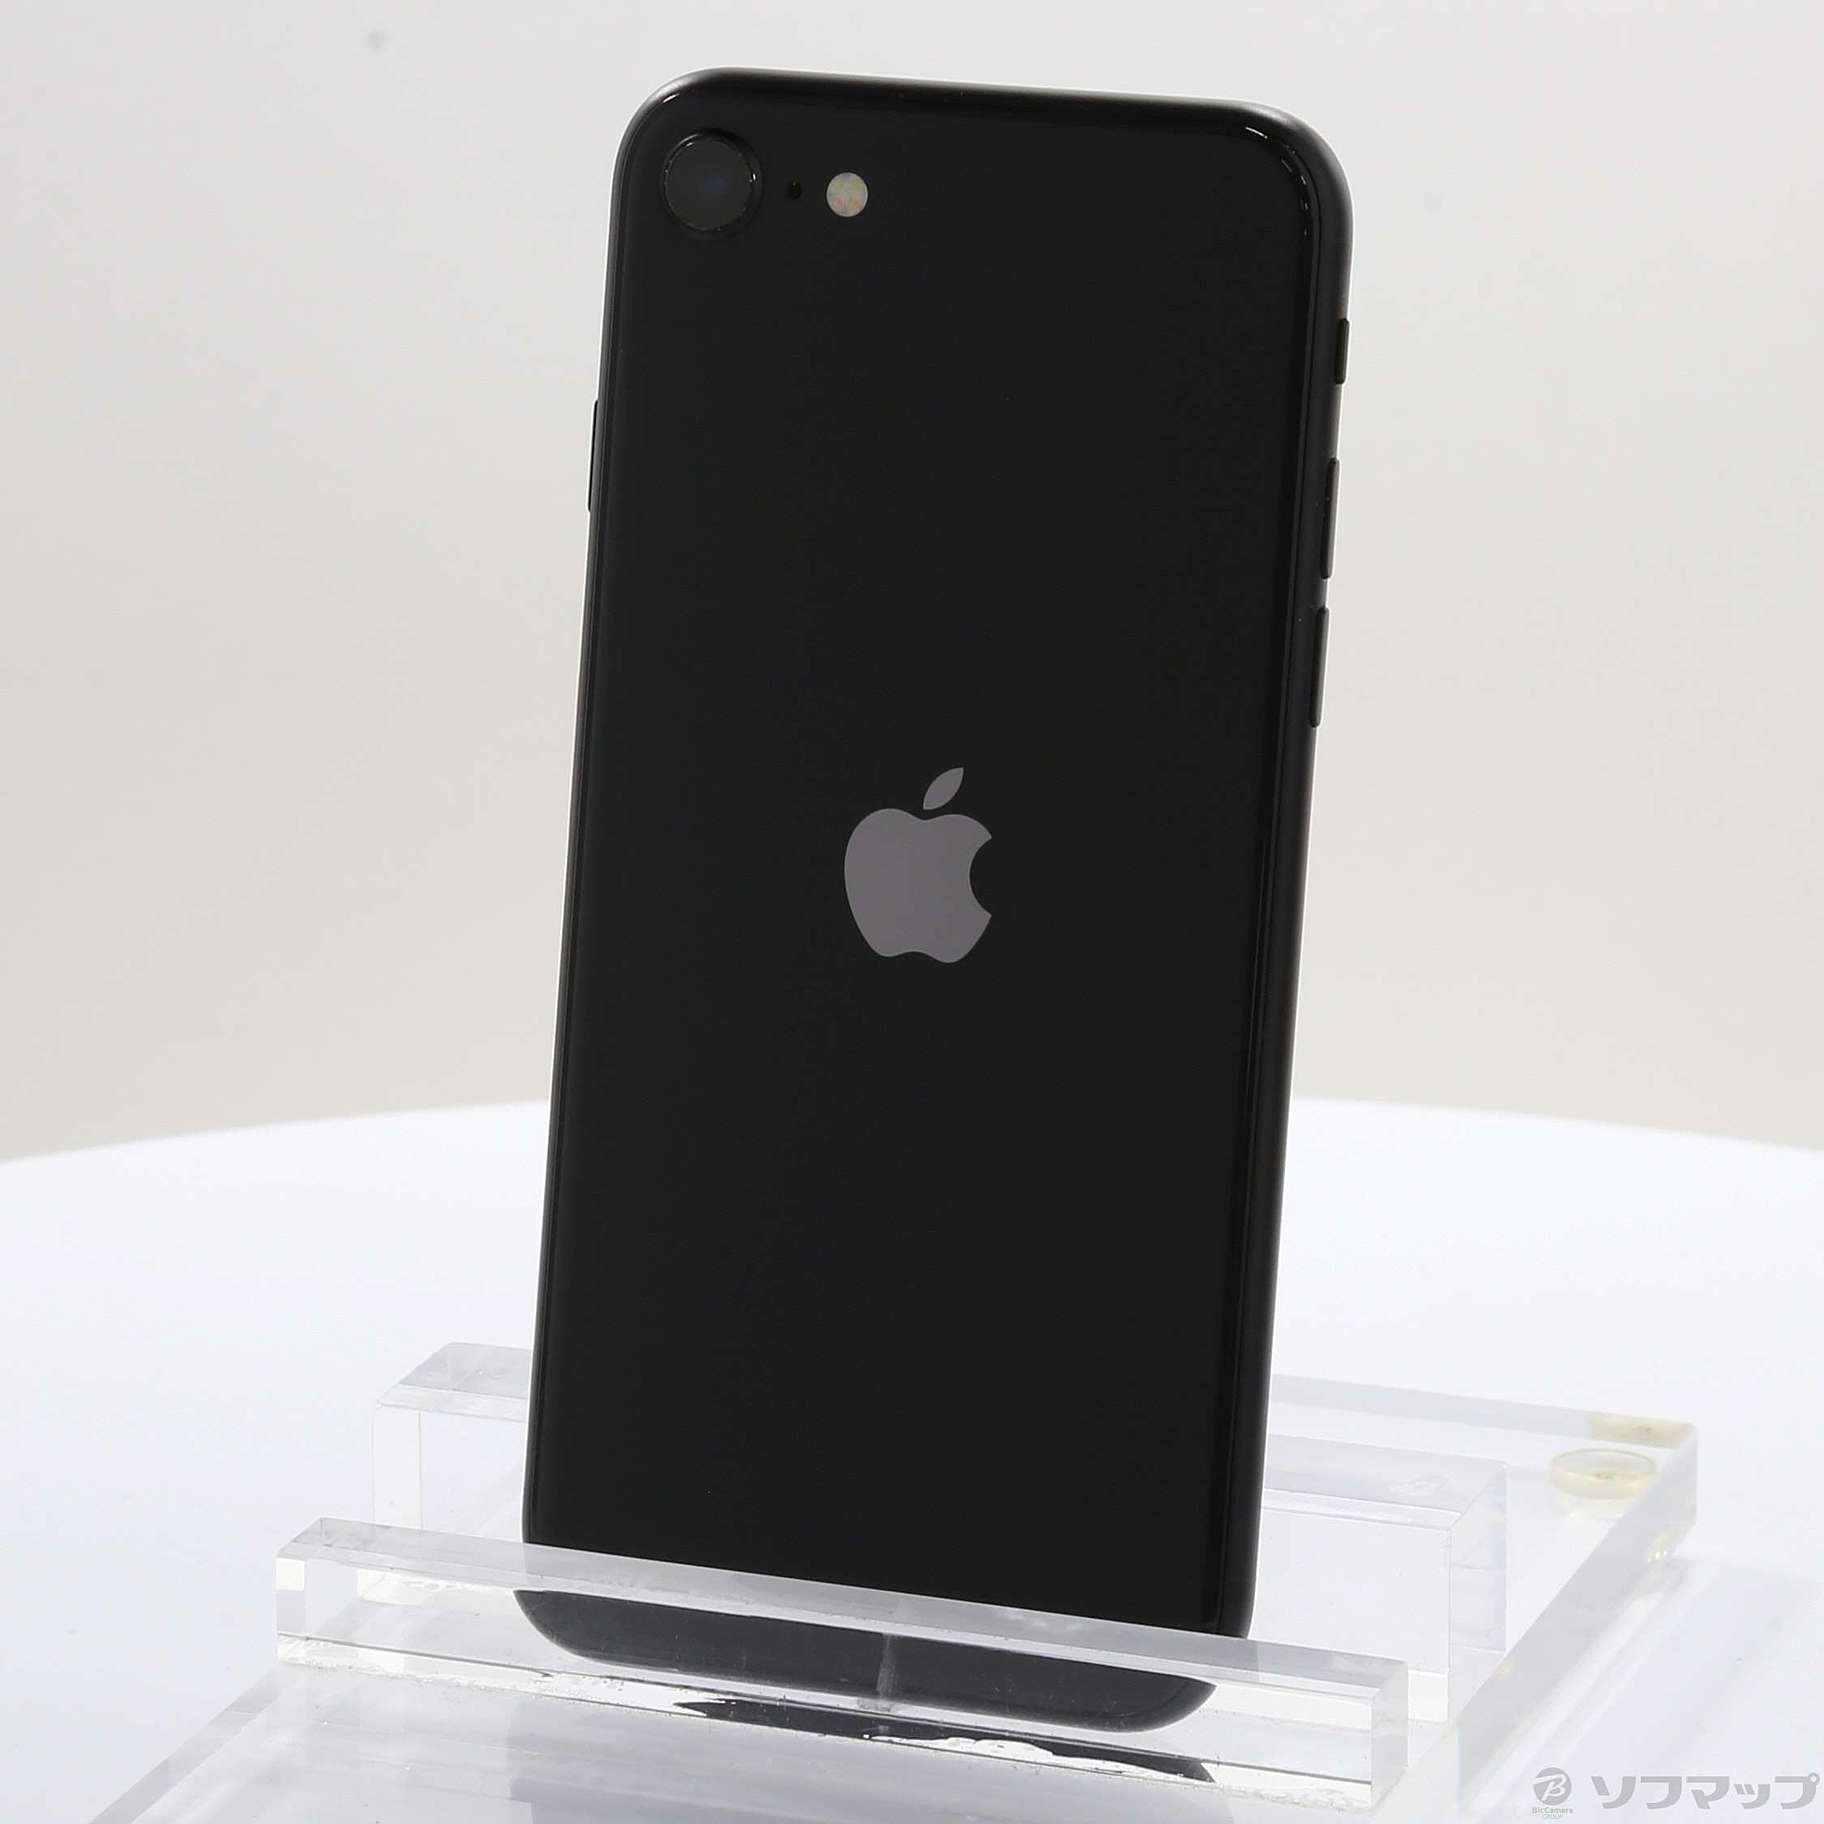 Apple iPhone SE 第2世代 128GB ブラック MHGT3J/A - スマートフォン本体